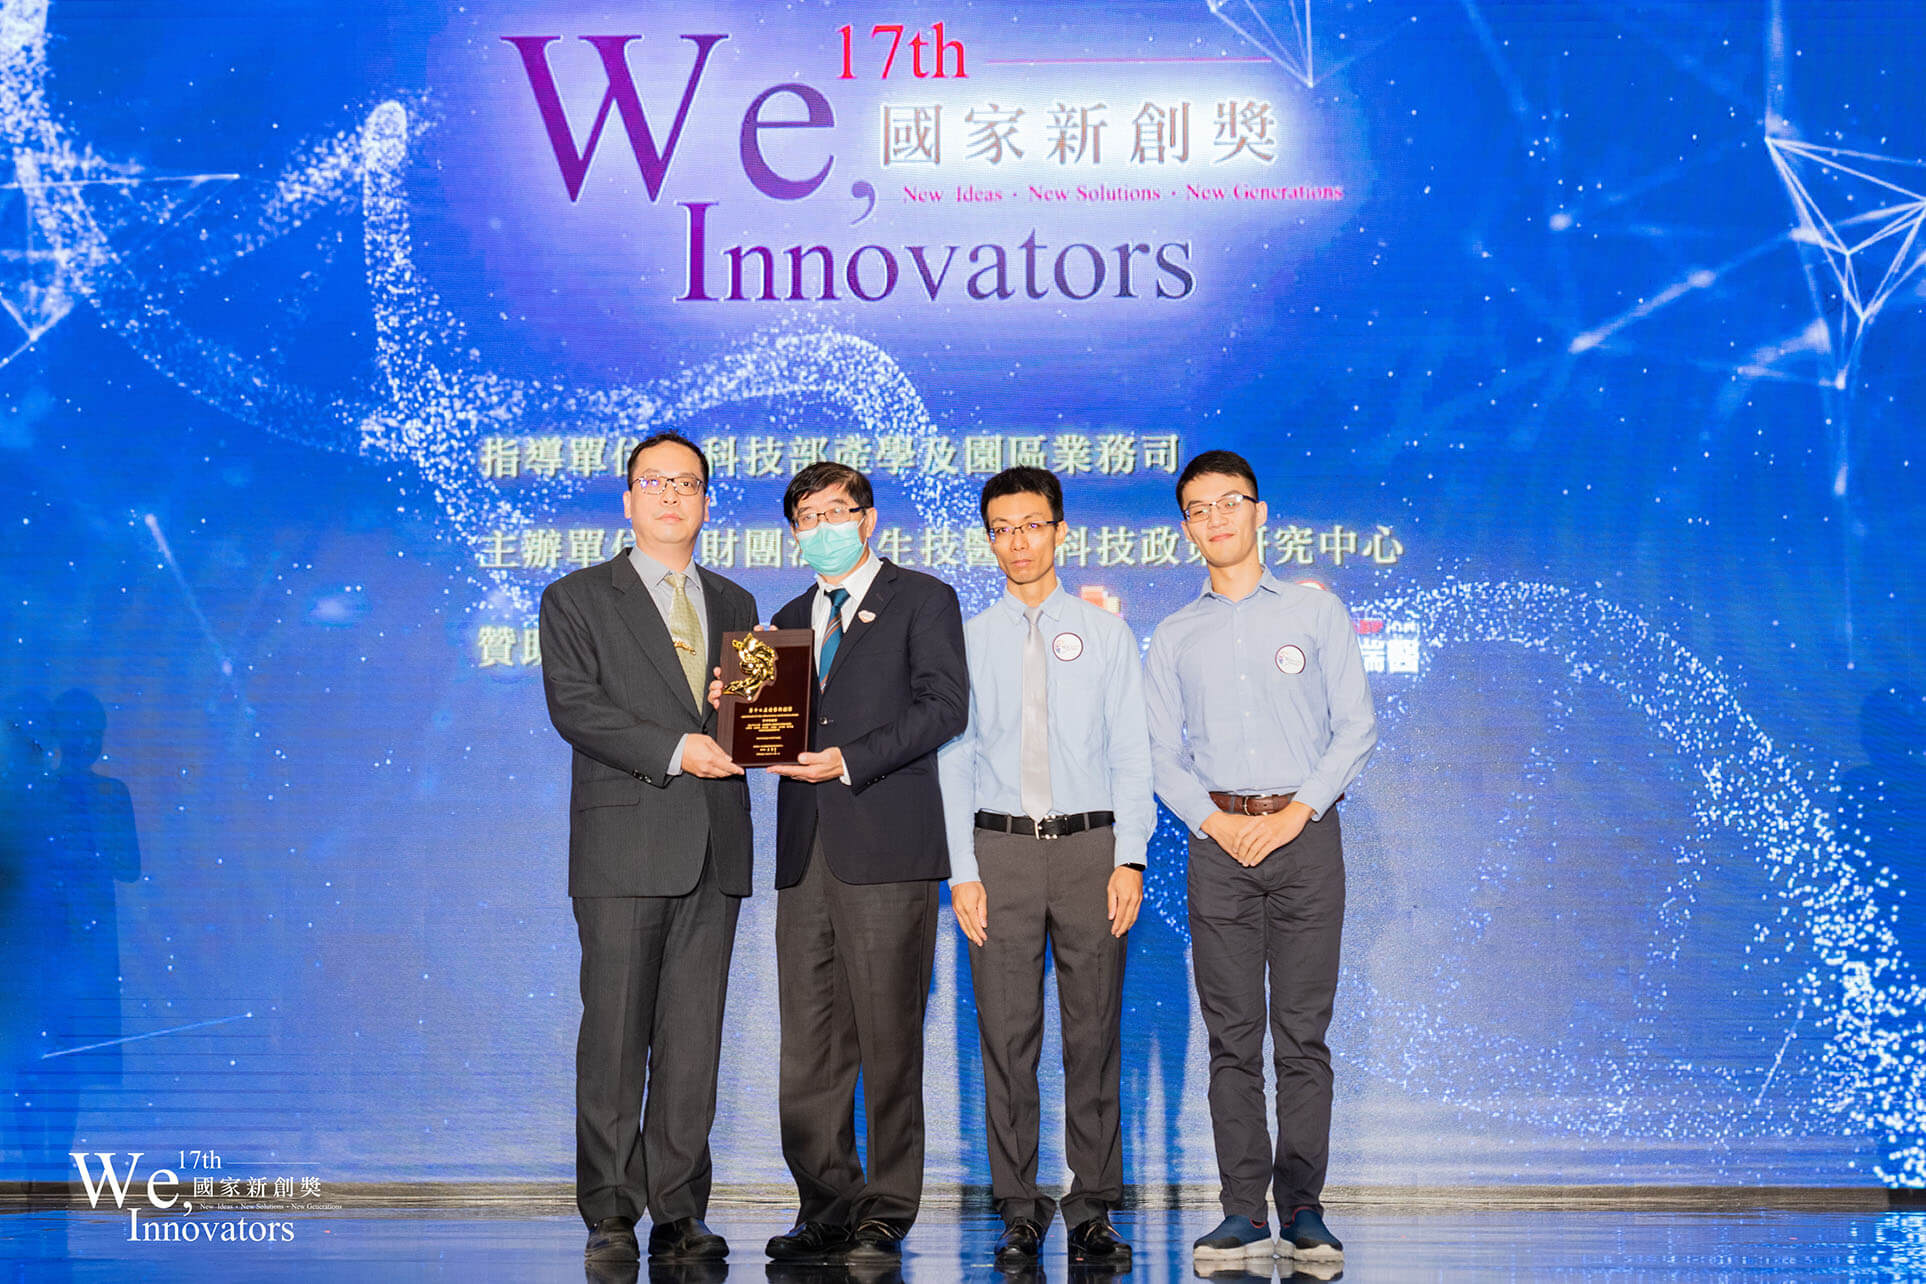 中正大學機械工程系王祥辰教授團隊研發「智慧內視鏡醫療顯示器」，獲頒「第17屆國家新創獎」